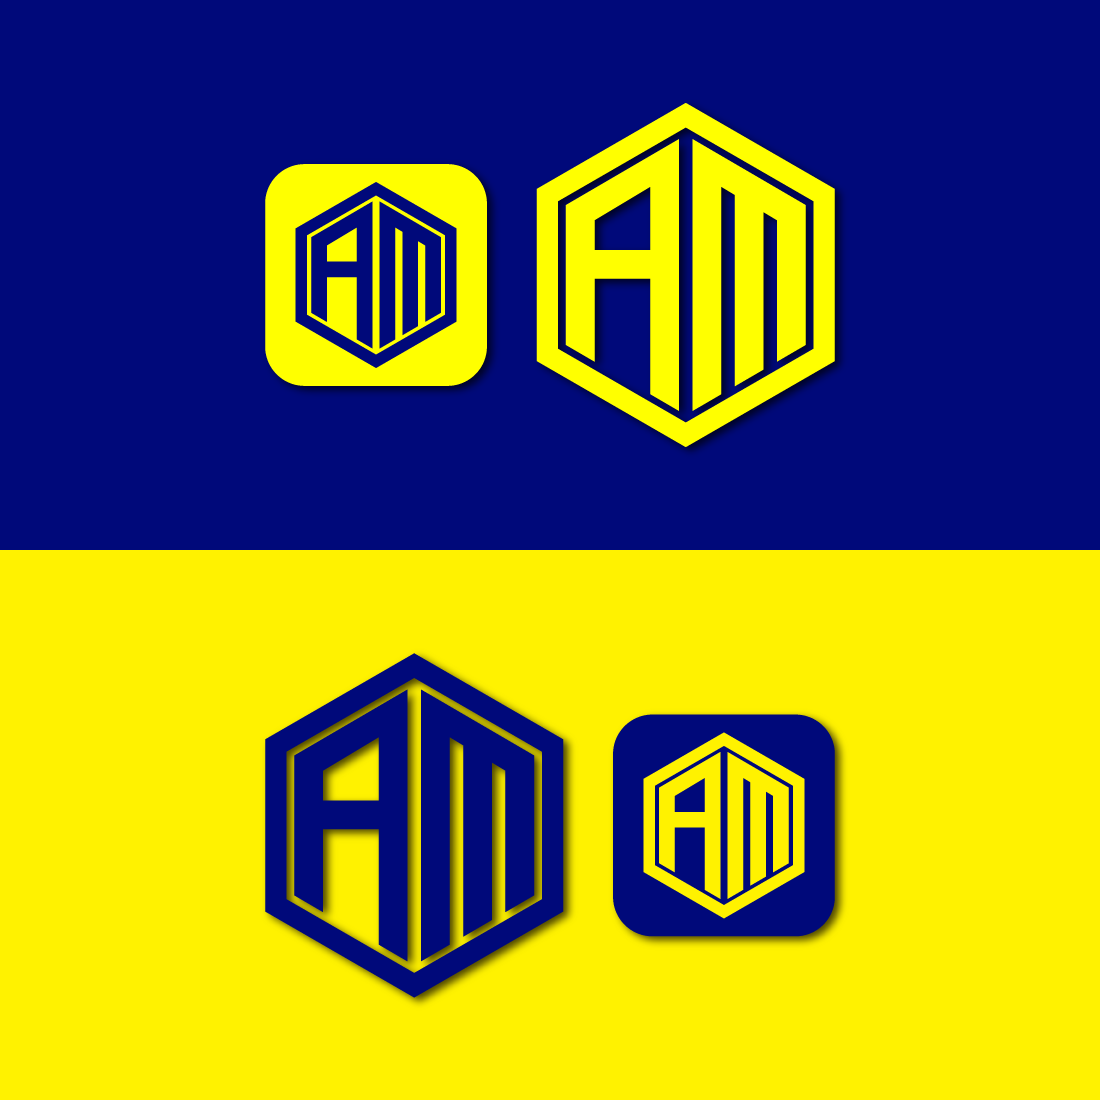 AM Logo Design cover image.